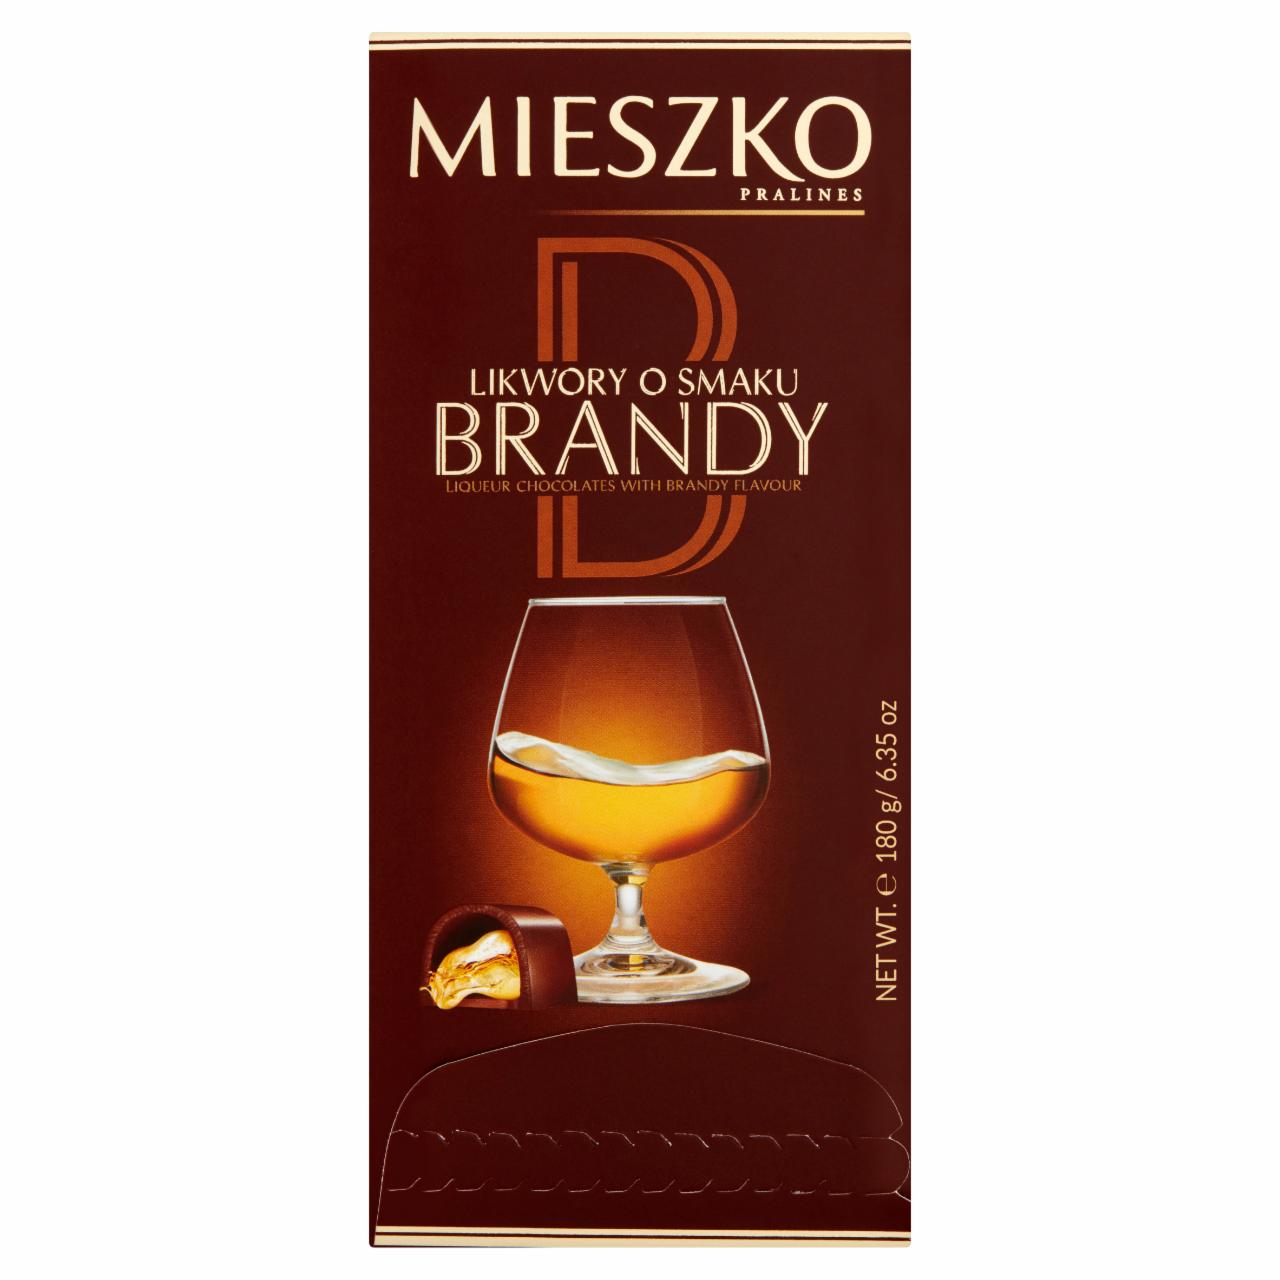 Zdjęcia - Mieszko Likwory o smaku brandy 180 g